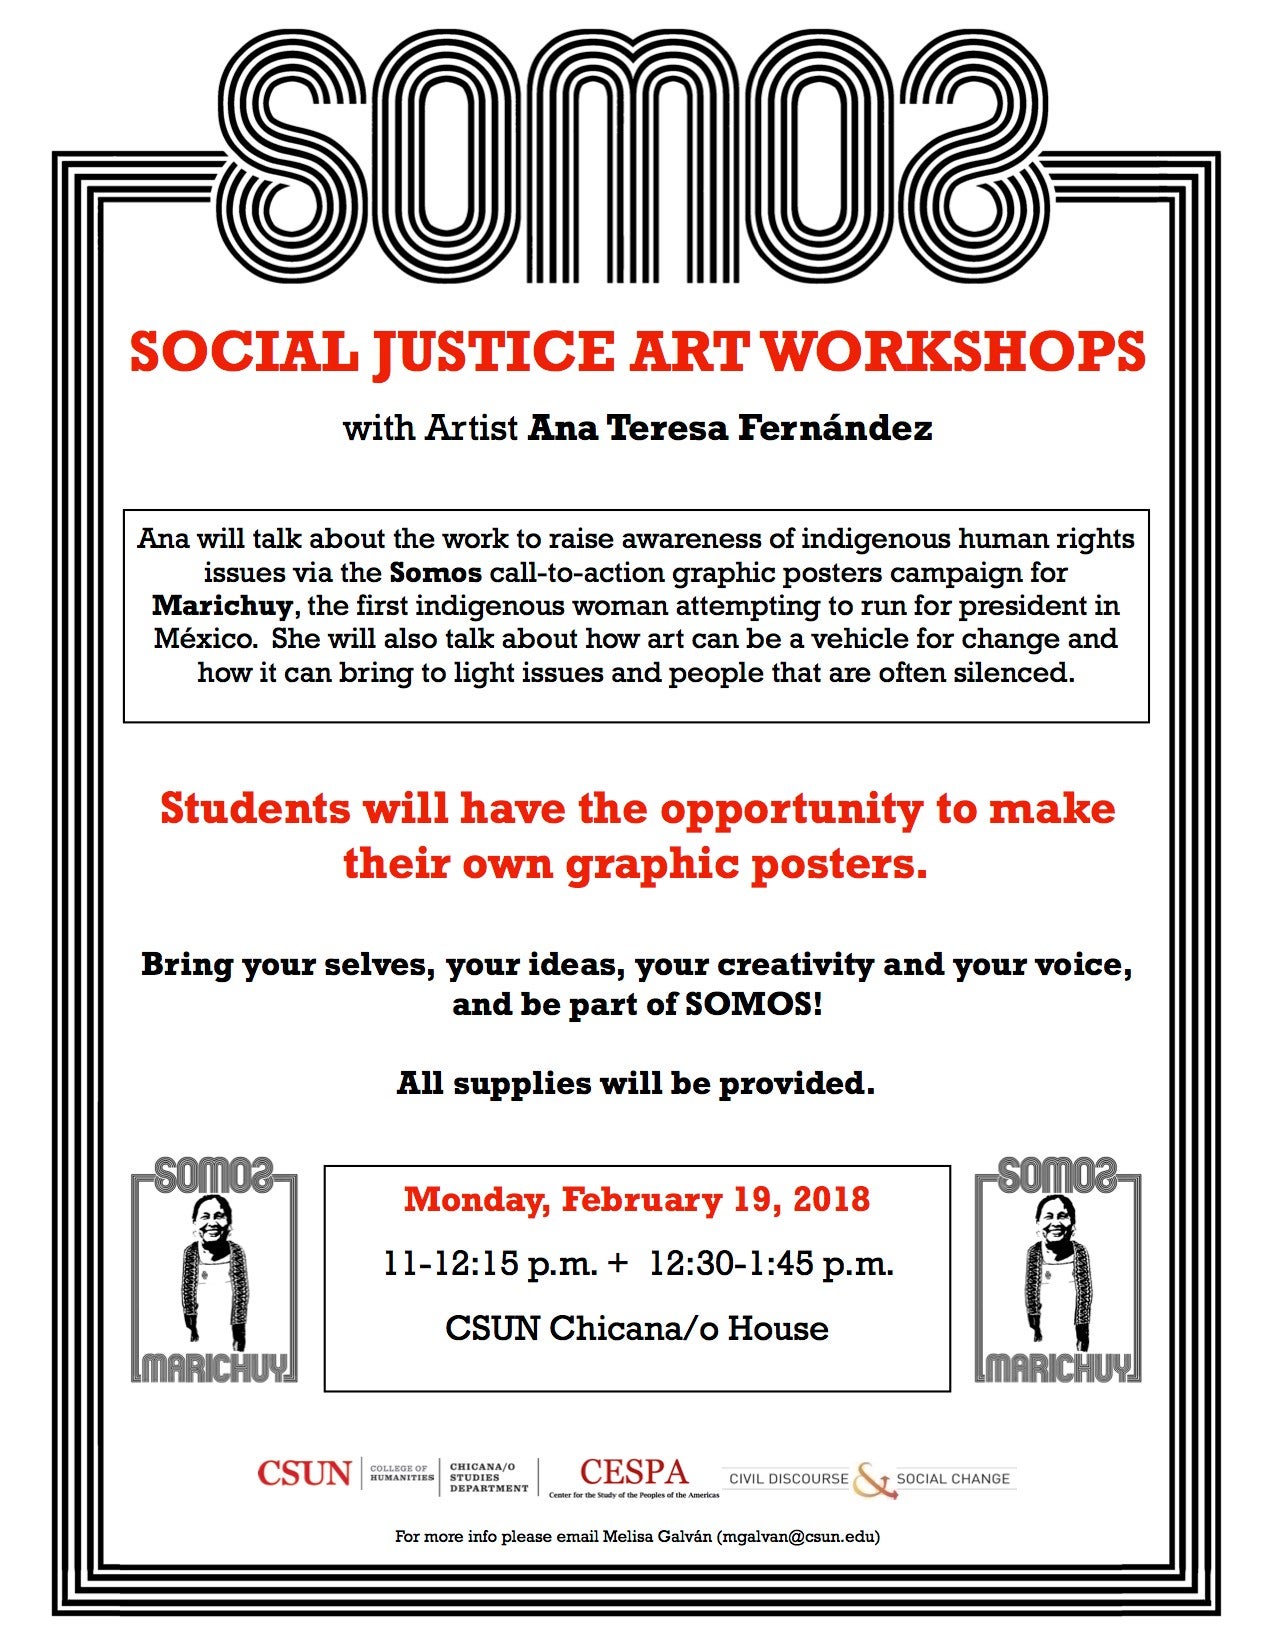 SOMAS: Social Justice Art Workshops